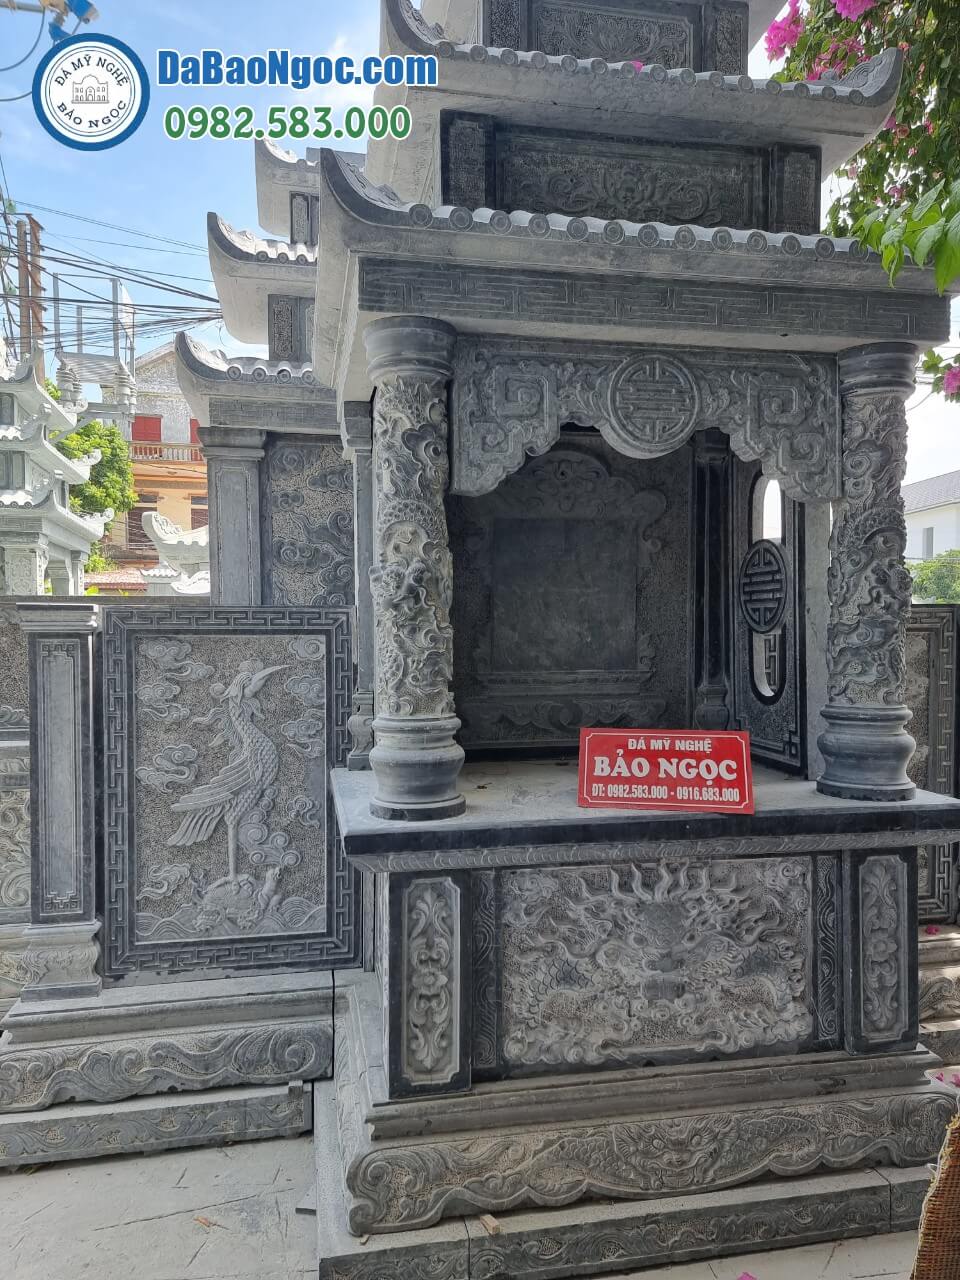 Bán và xây dựng, làm Mộ đá 3 mái ở Lâm Đồng rẻ đẹp